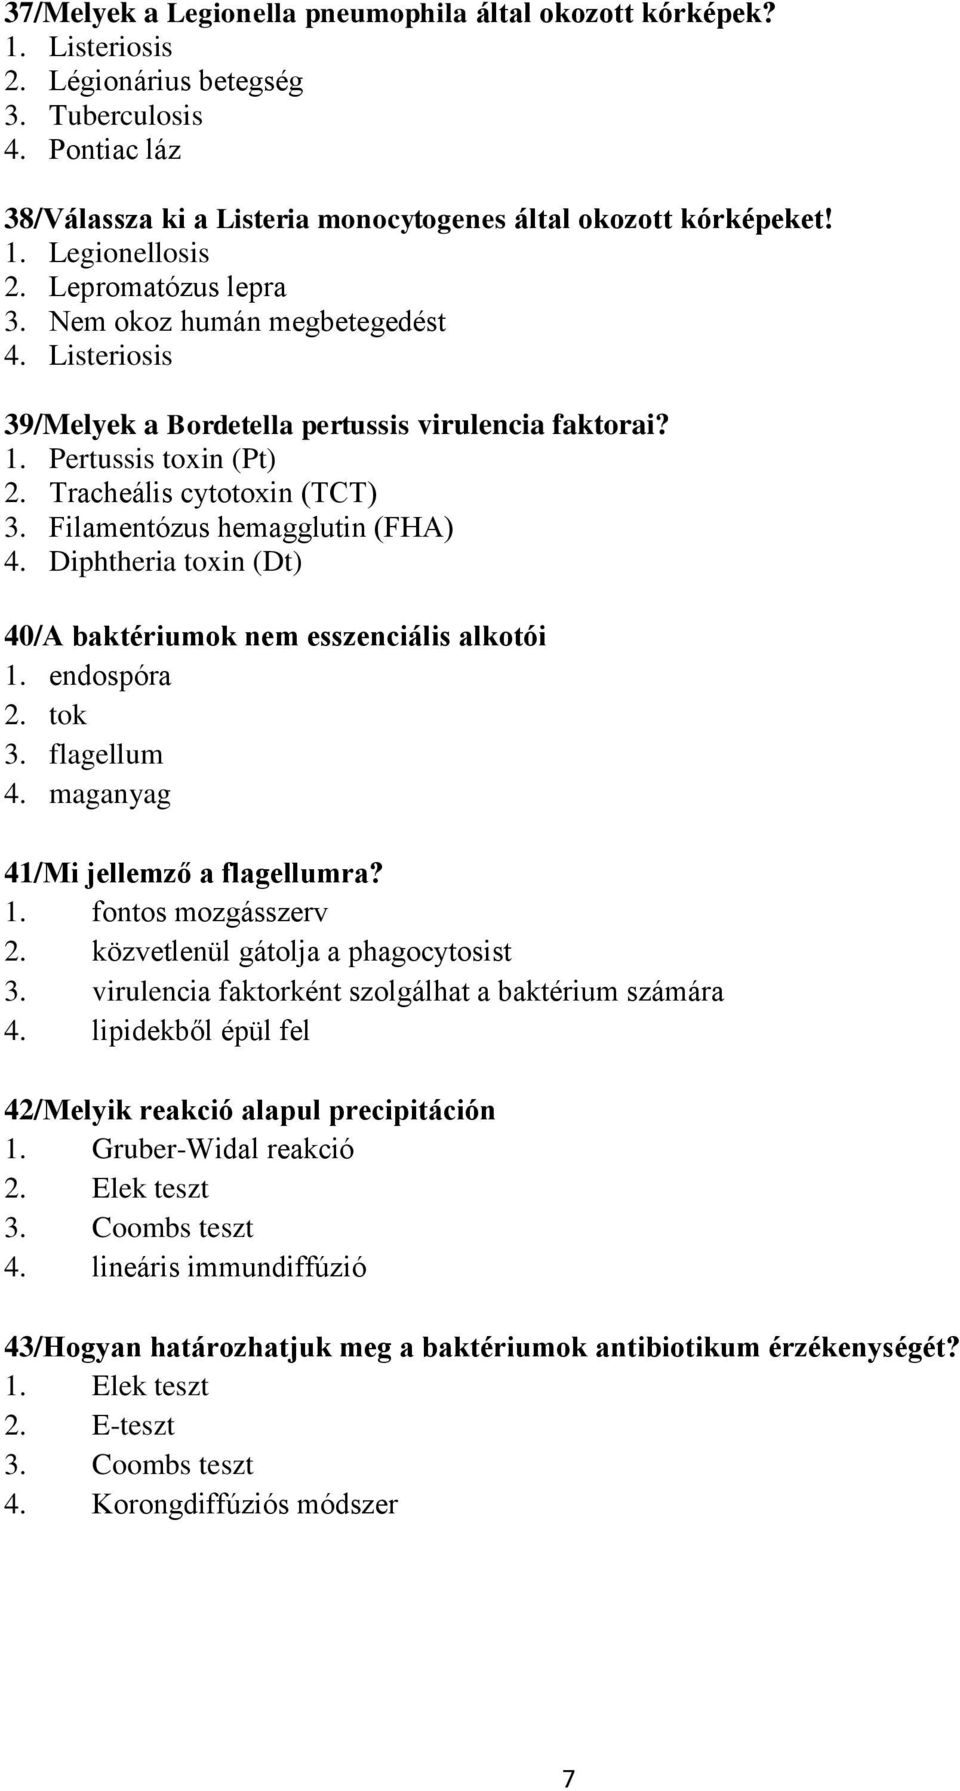 Filamentózus hemagglutin (FHA) 4. Diphtheria toxin (Dt) 40/A baktériumok nem esszenciális alkotói 1. endospóra 2. tok 3. flagellum 4. maganyag 41/Mi jellemző a flagellumra? 1. fontos mozgásszerv 2.